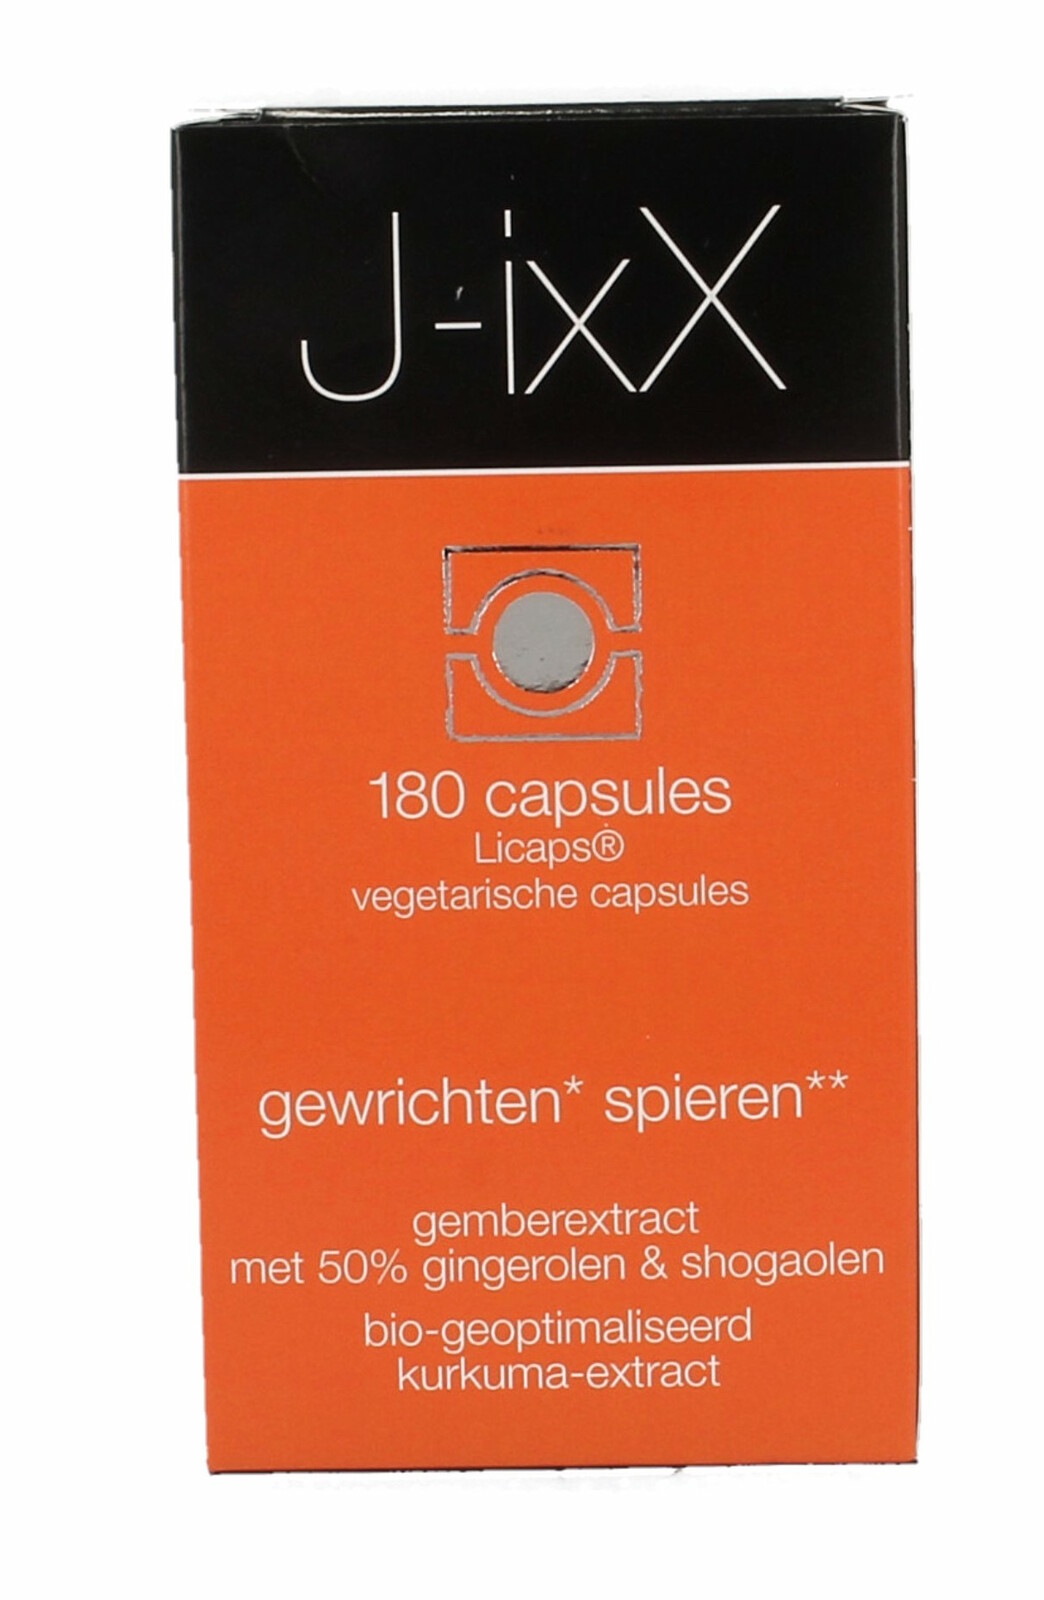 IxX J-Ixx Capsules 180st